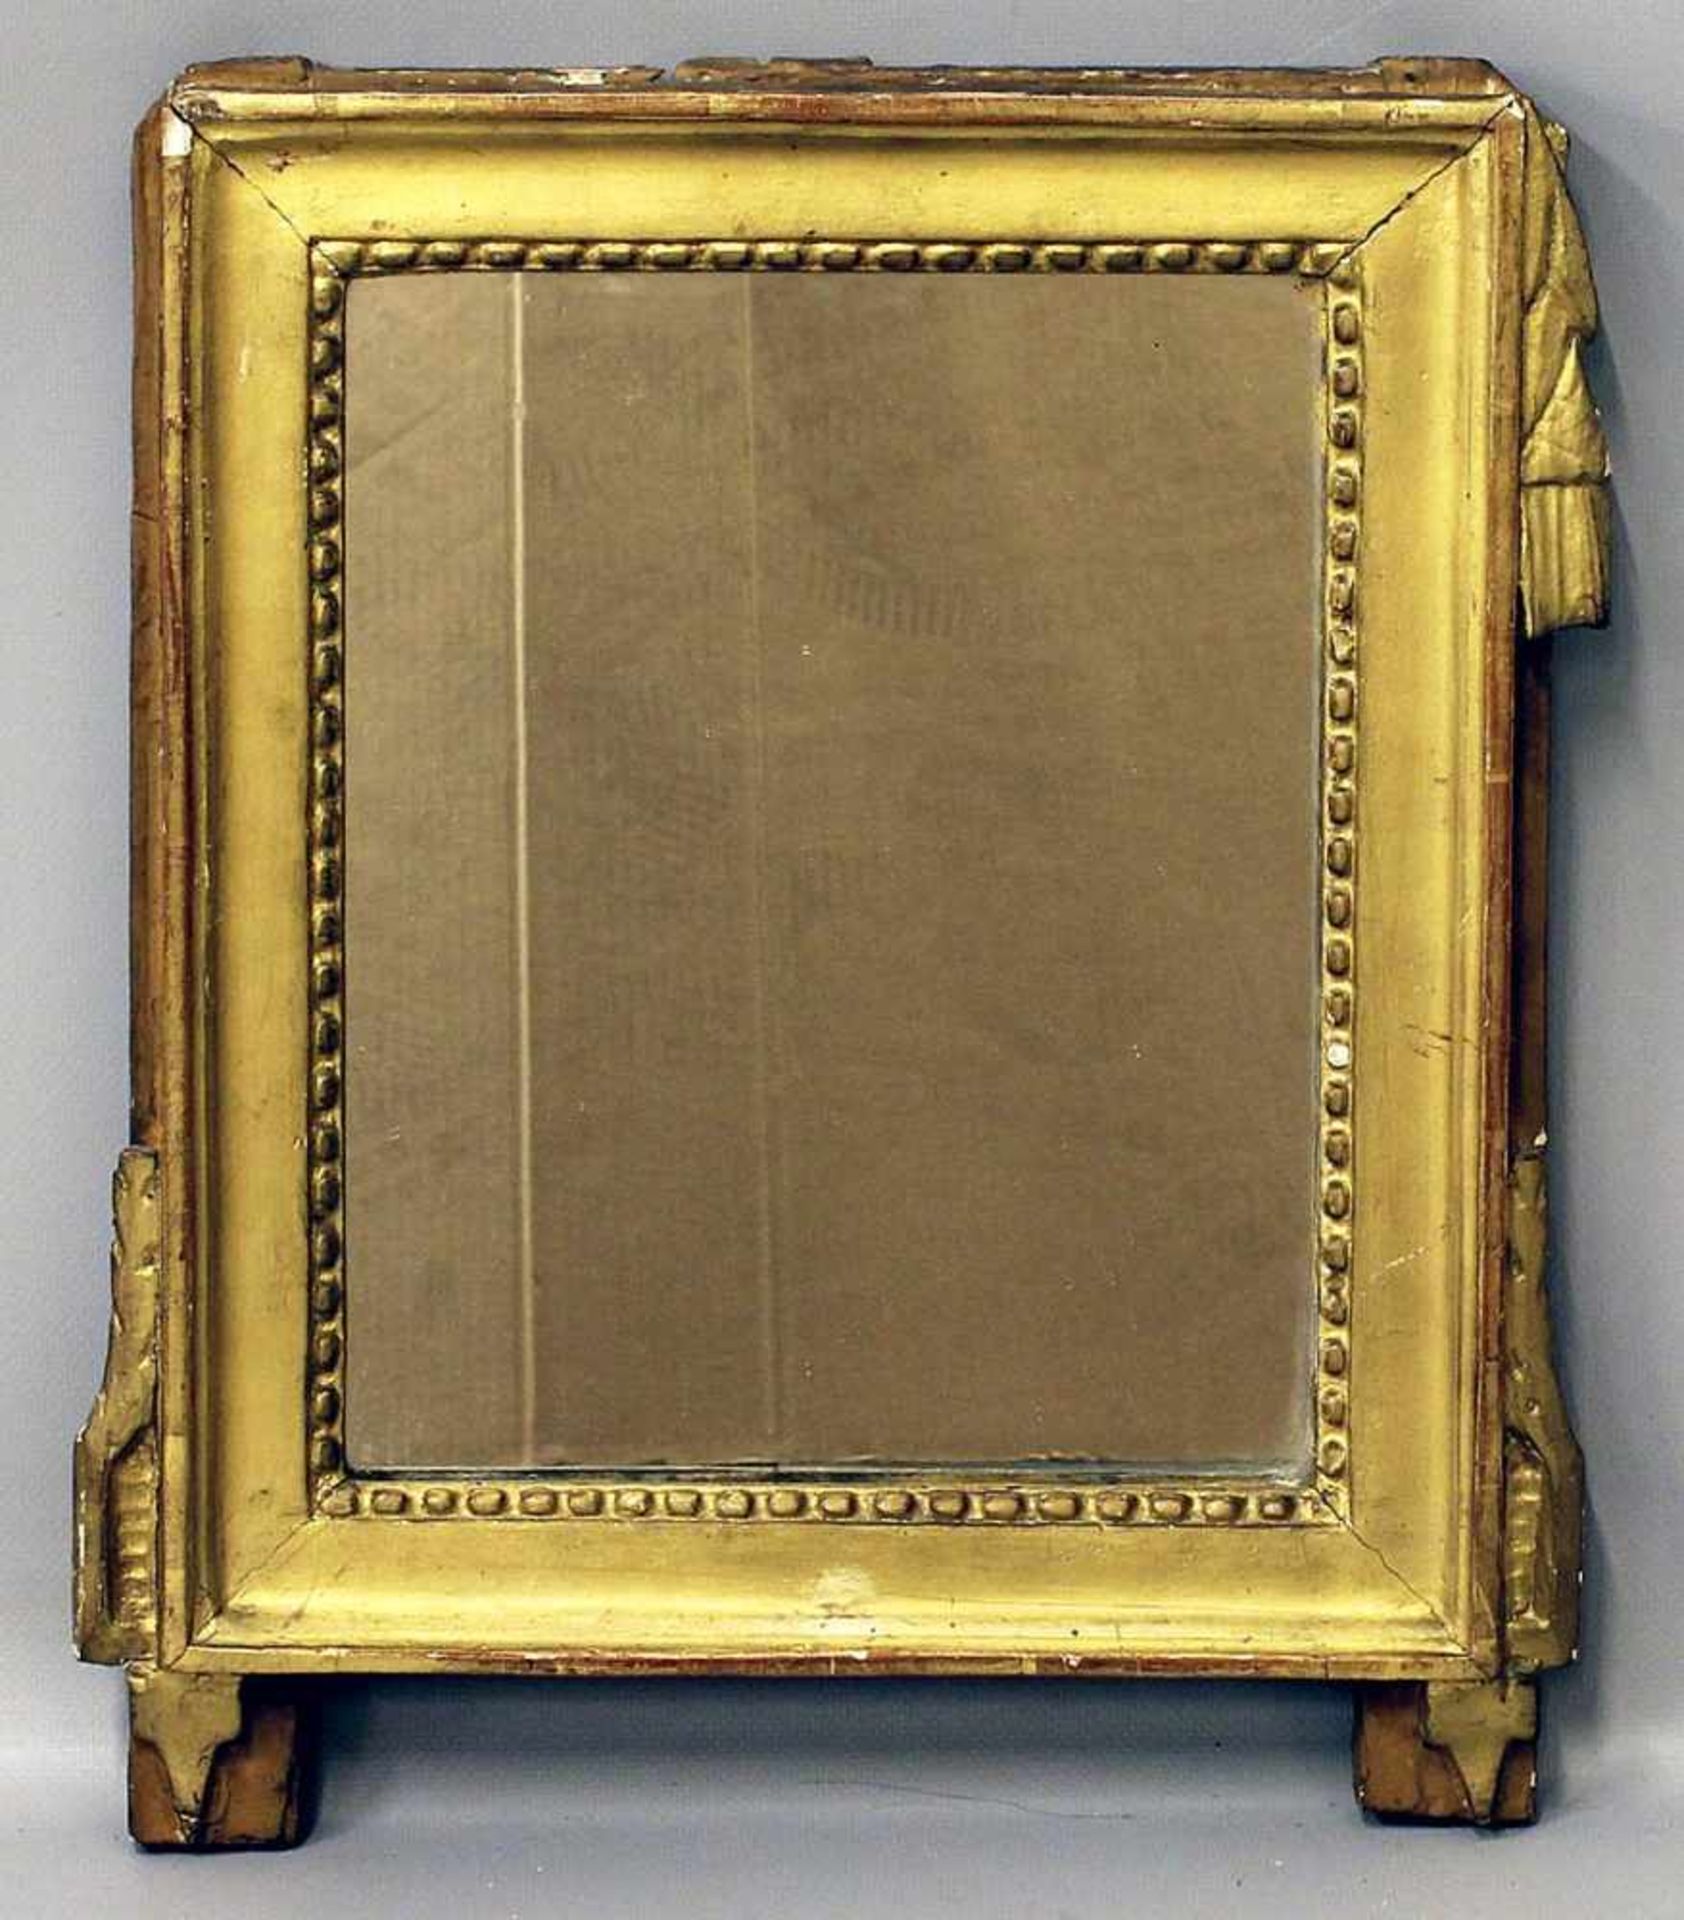 Fragment eines Regence-Spiegels (frühes 19. Jh.).Holz und Stuck, goldgefasst, inliegend Spiegelglas.